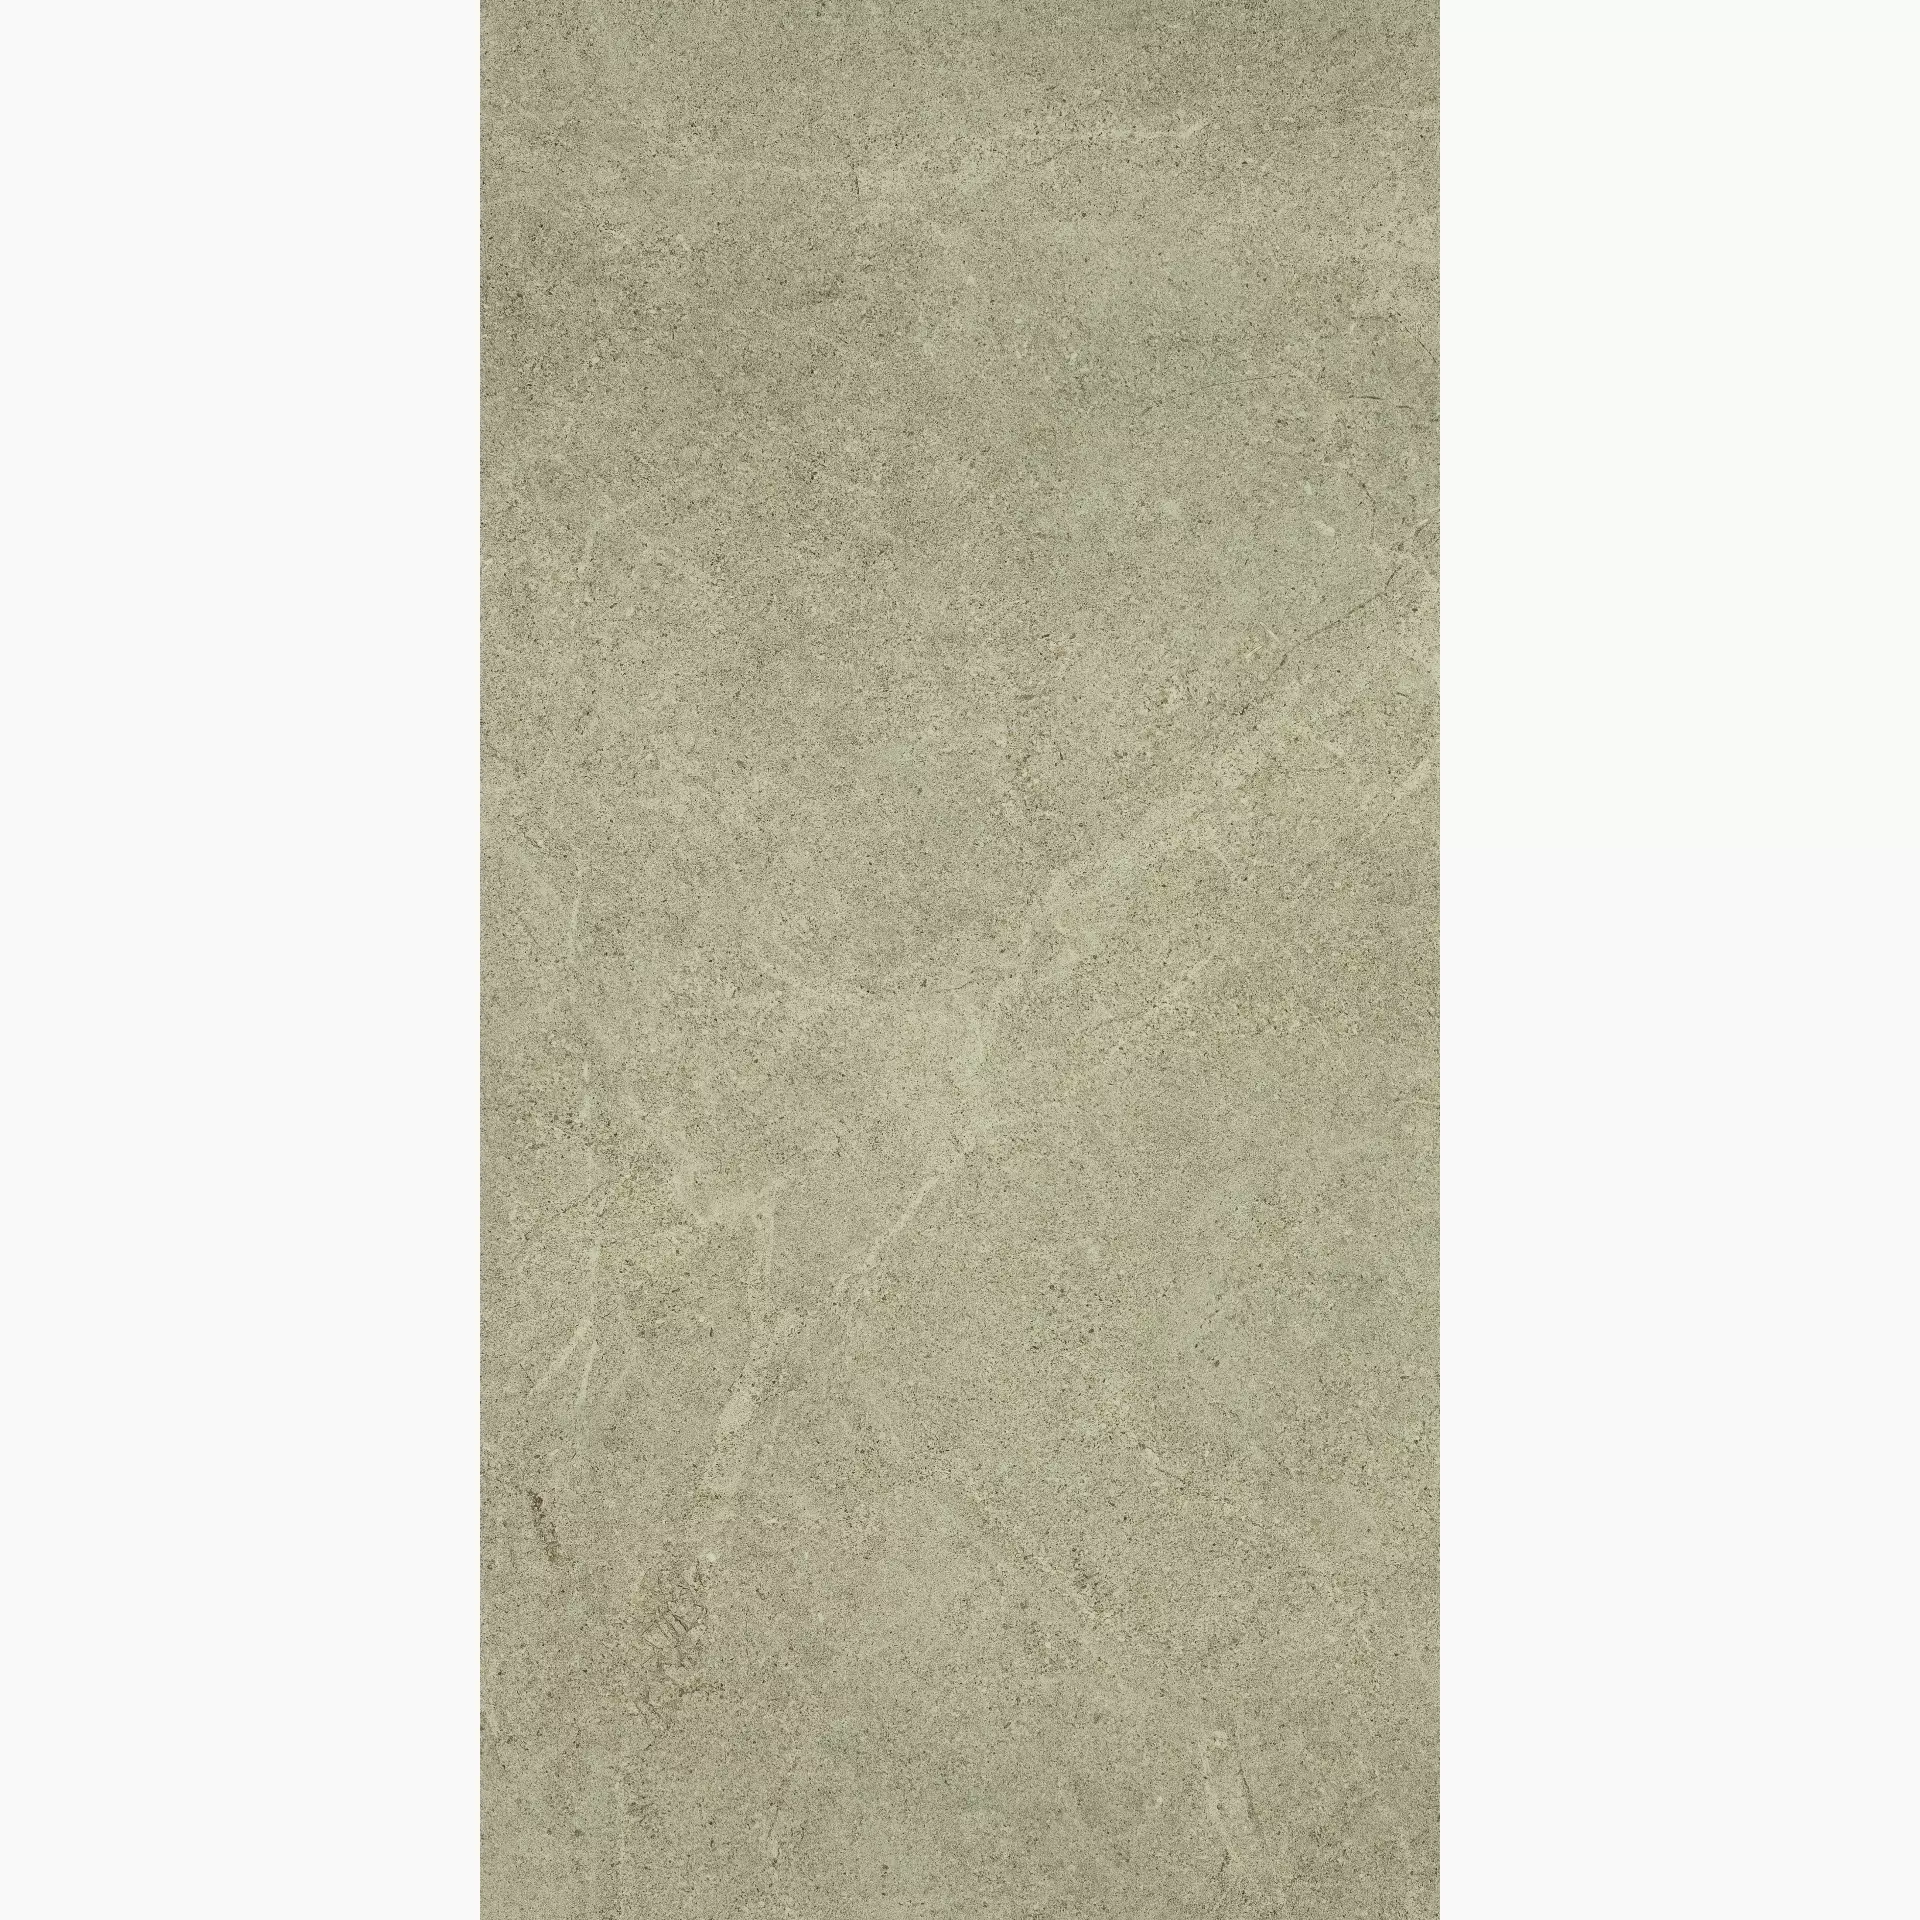 Bodenfliese,Wandfliese Cercom Archistone Sand Antislip Sand 1082619 rutschhemmend 30x60cm rektifiziert 9,5mm